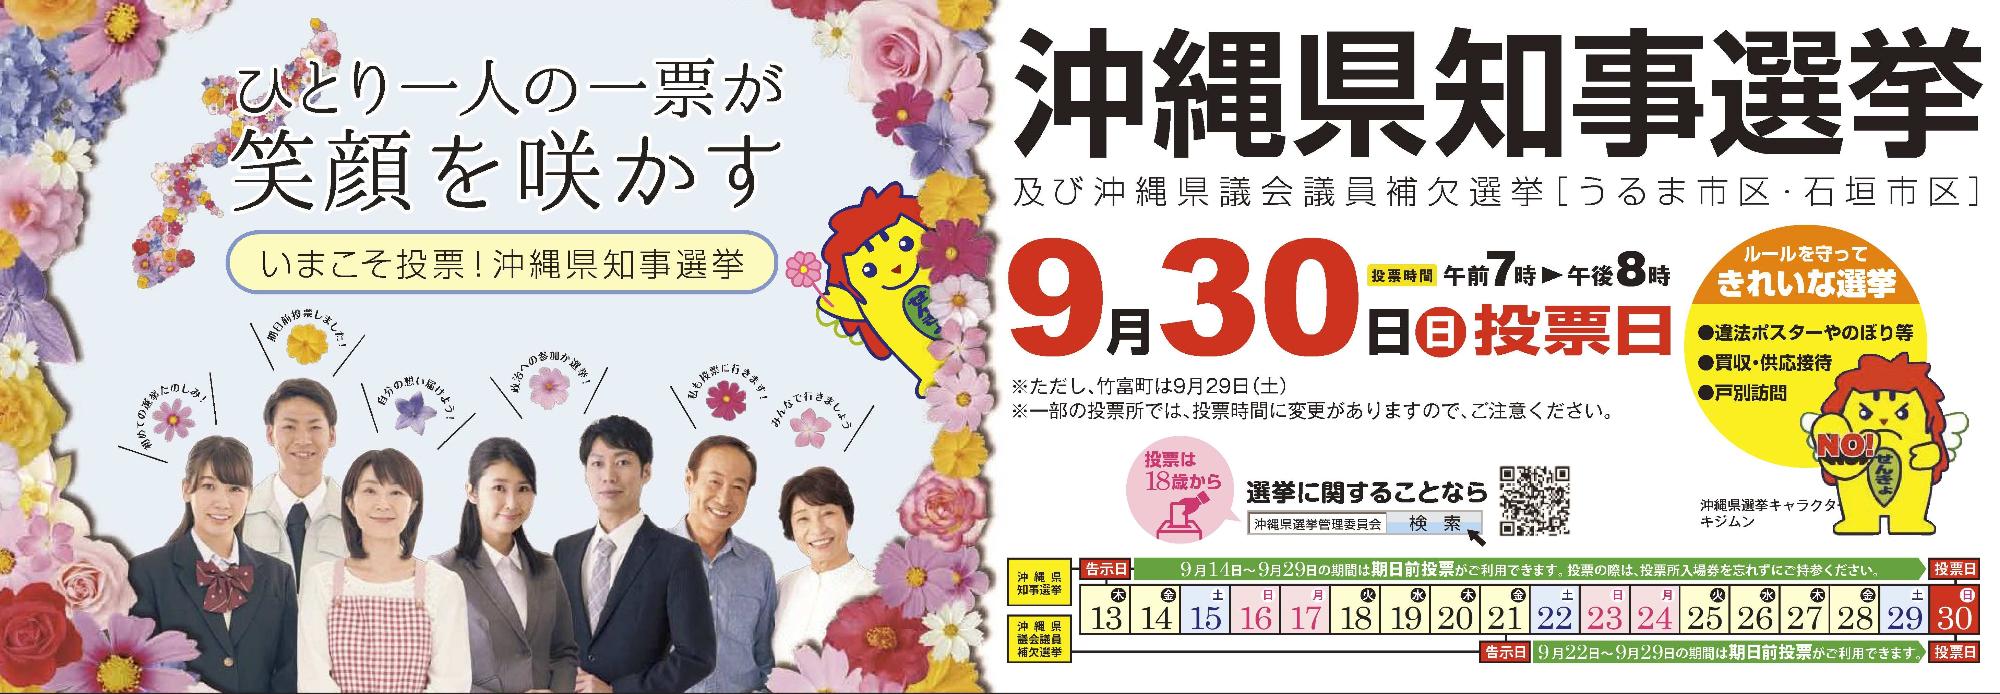 平成30年9月30日は、沖縄県知事選挙の投票日です。